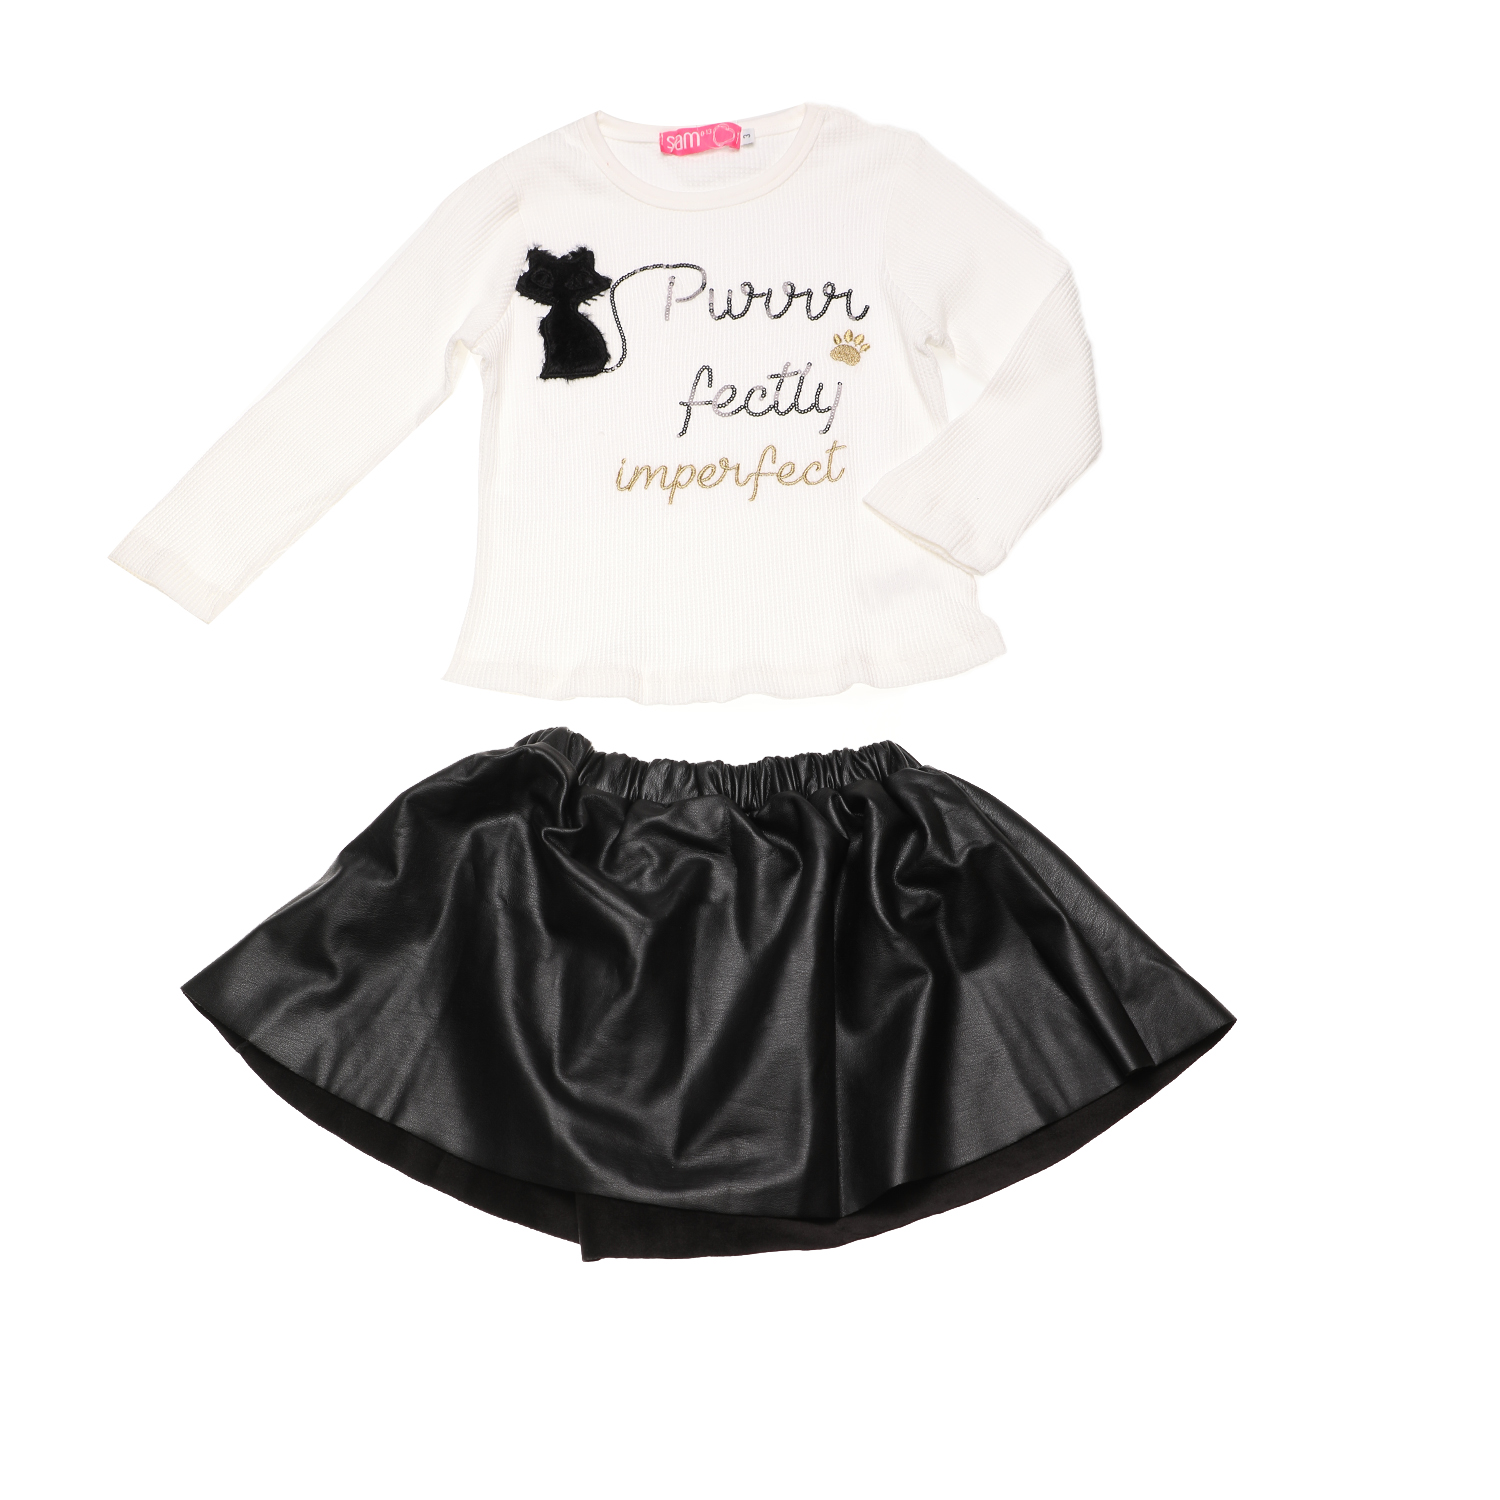 Παιδικά/Girls/Ρούχα/Σετ SAM 0-13 - Παιδικό σετ από μπλούζα και φούστα SAM 0-13 PERFECTLY INPERFECT λευκό μαύρο